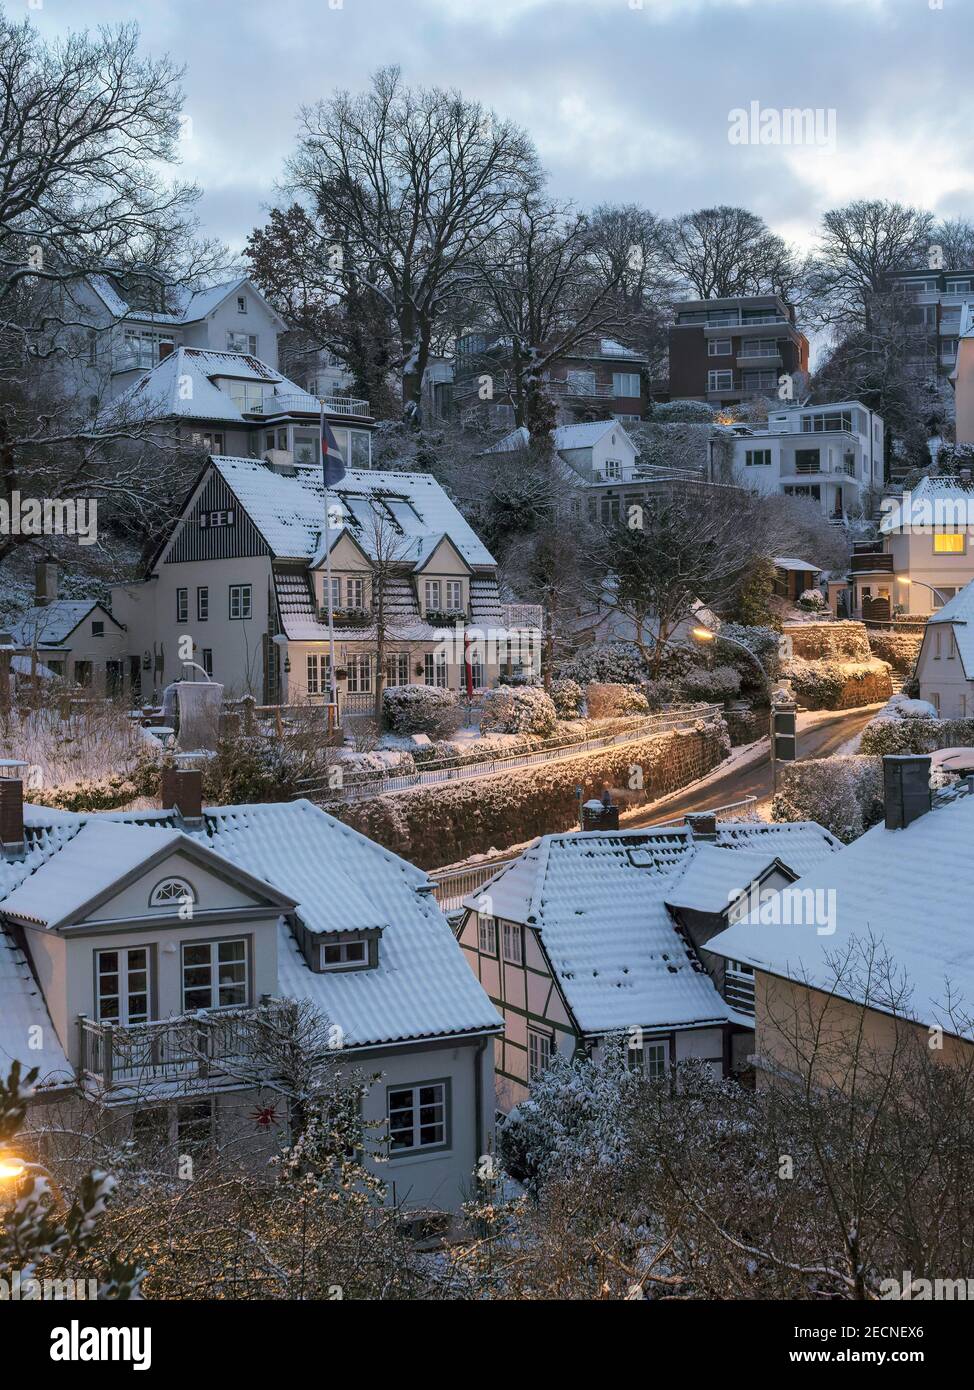 Tagesanbruch im verschneiten Treppenviertel, Hamburg -Blankenese, Deutschland, Europa Stockfoto